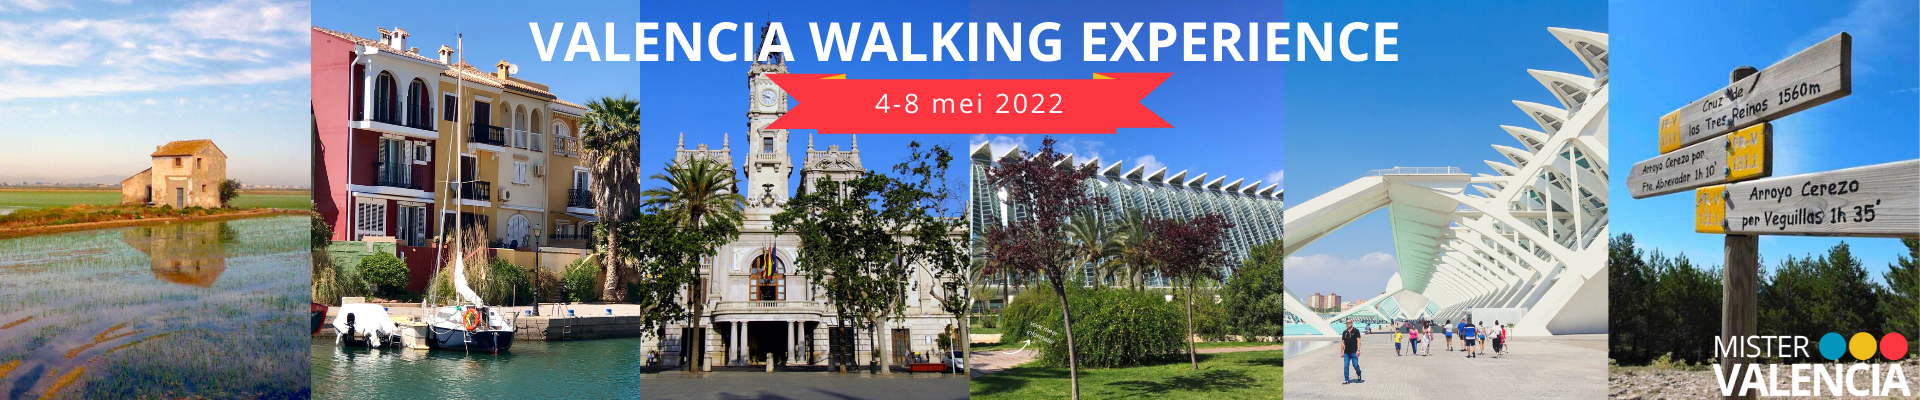 Valencia Walking Experience Mei 2022